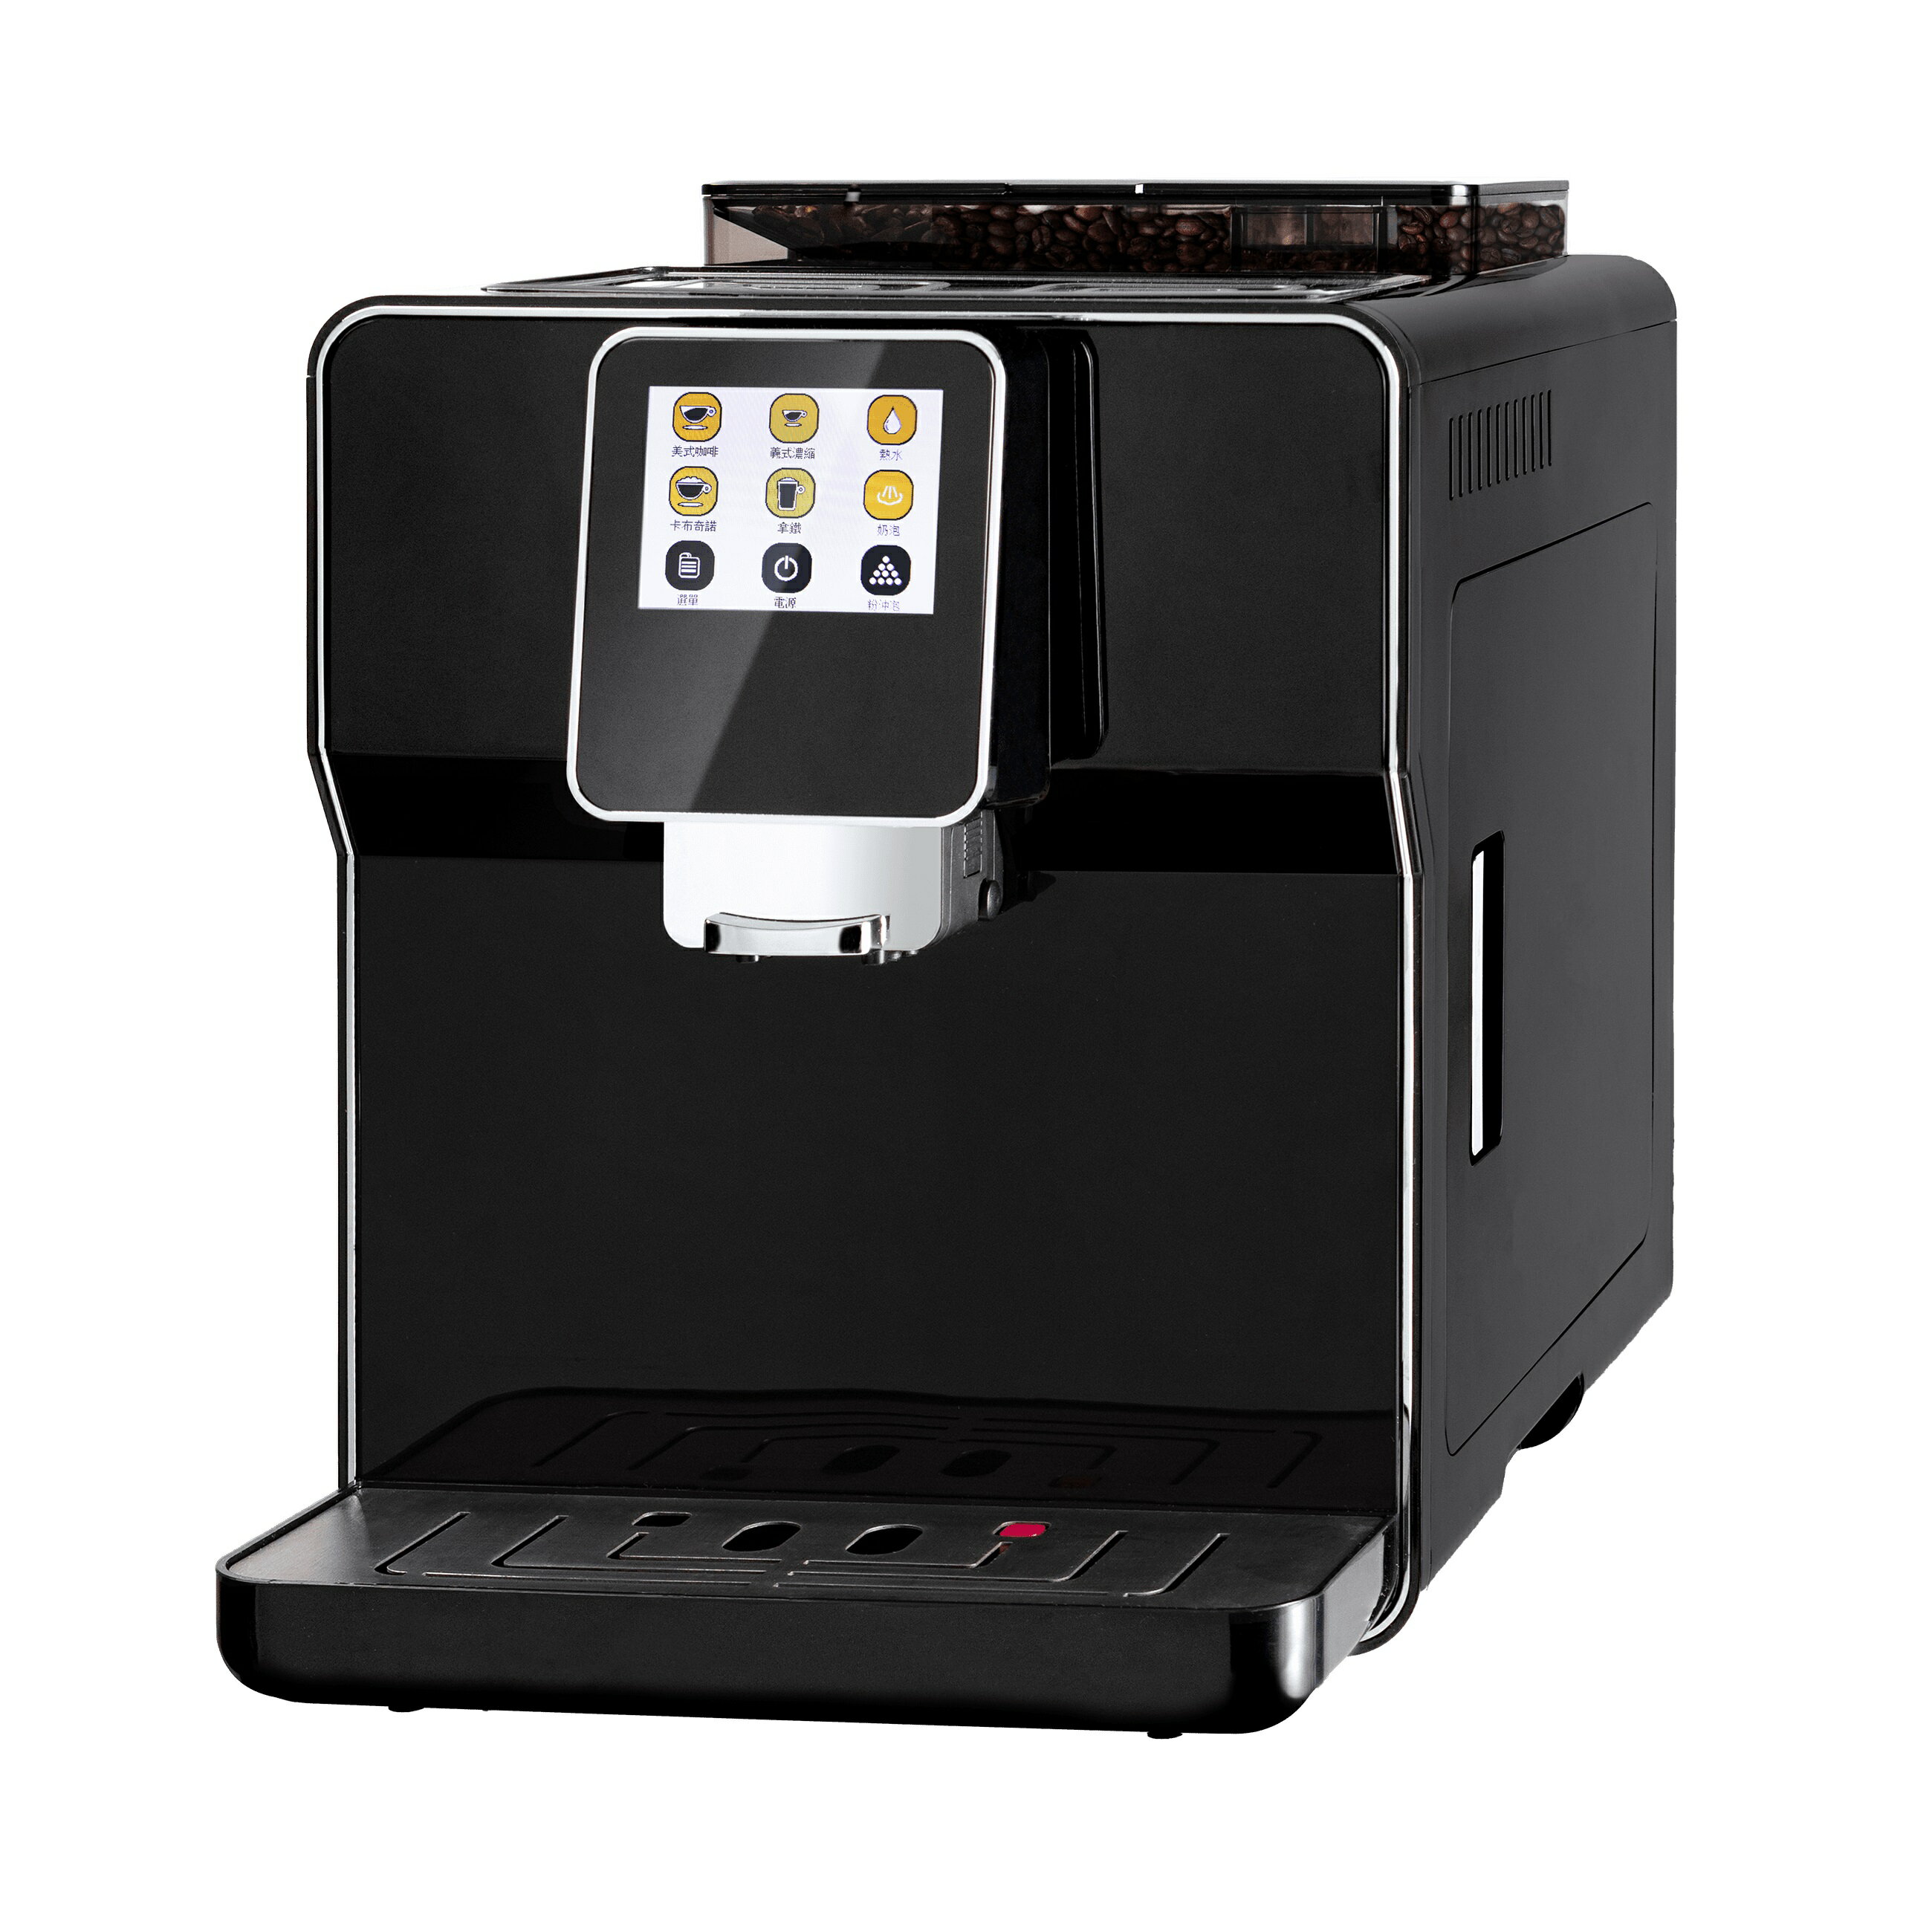 【領券折300】【得意家電】義大利 BEST 貝斯特 G6280 獨立式 全自動咖啡機 ※熱線07-7428010